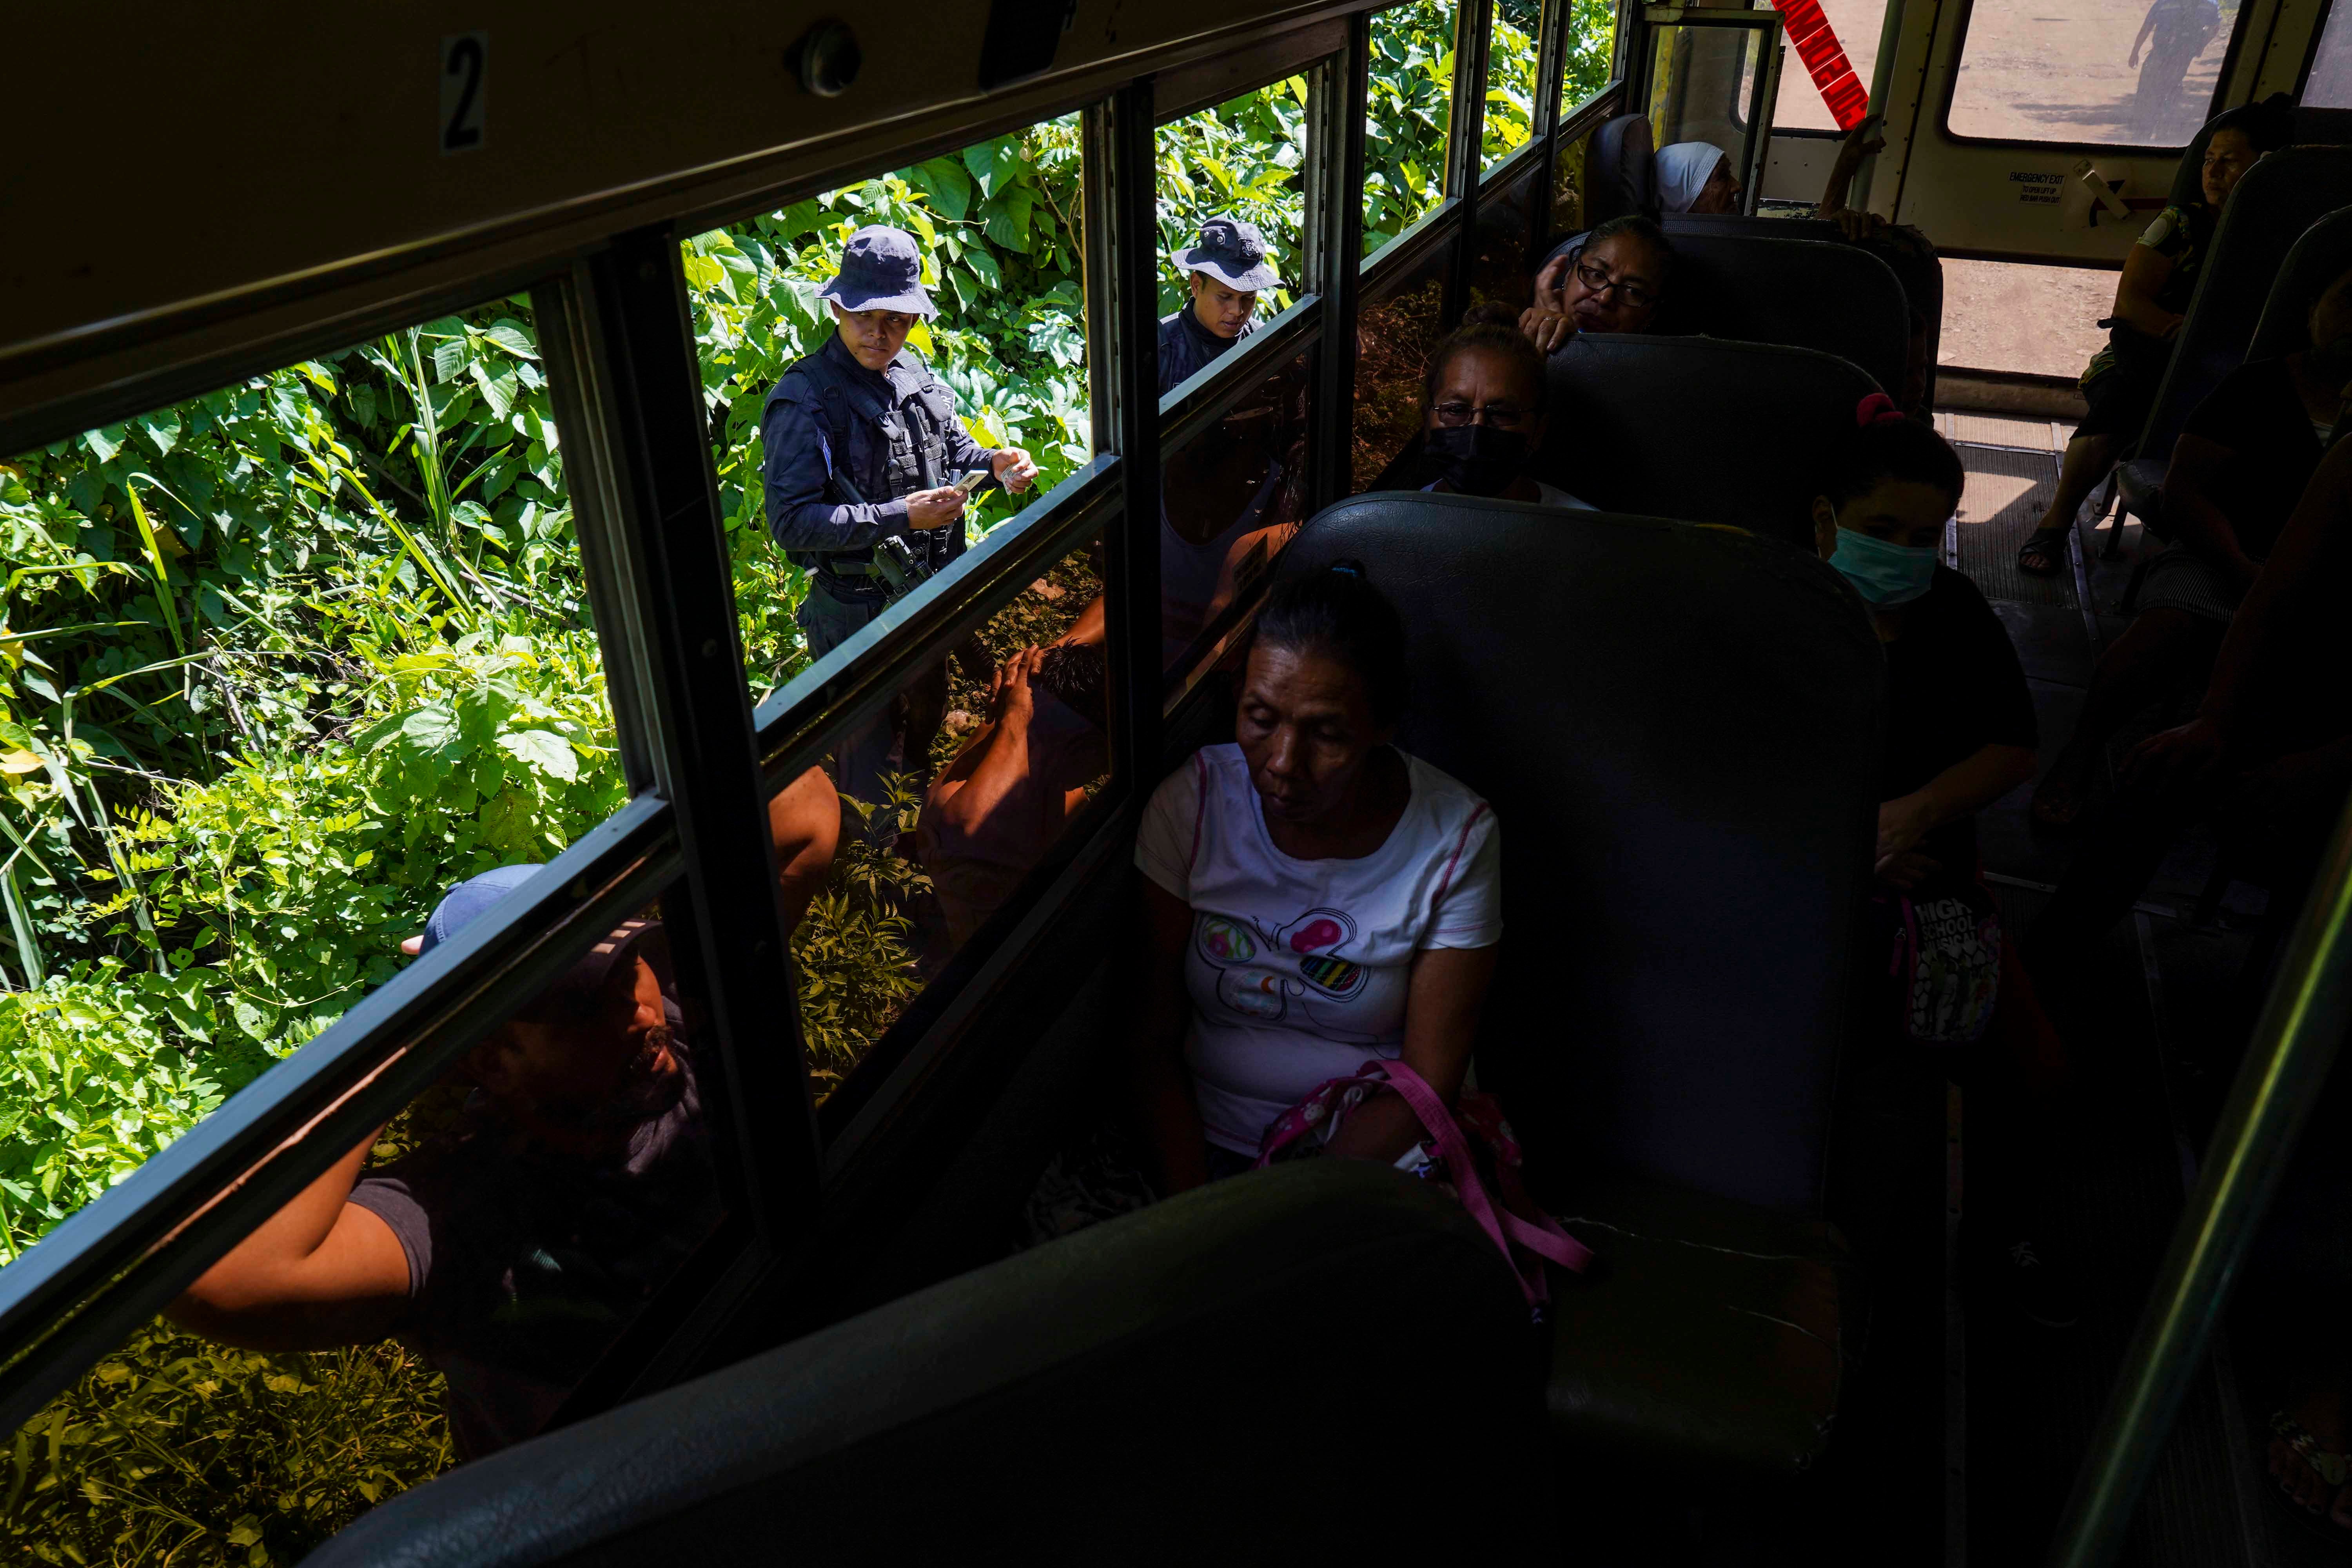 Des policiers salvadoriens contrôlaient les papiers d’identité de deux hommes qu’ils ont fait sortir d’un bus, lors d'une opération visant à identifier et arrêter des membres de gangs à Santa Ana, au Salvador, le 30 juin 2022.